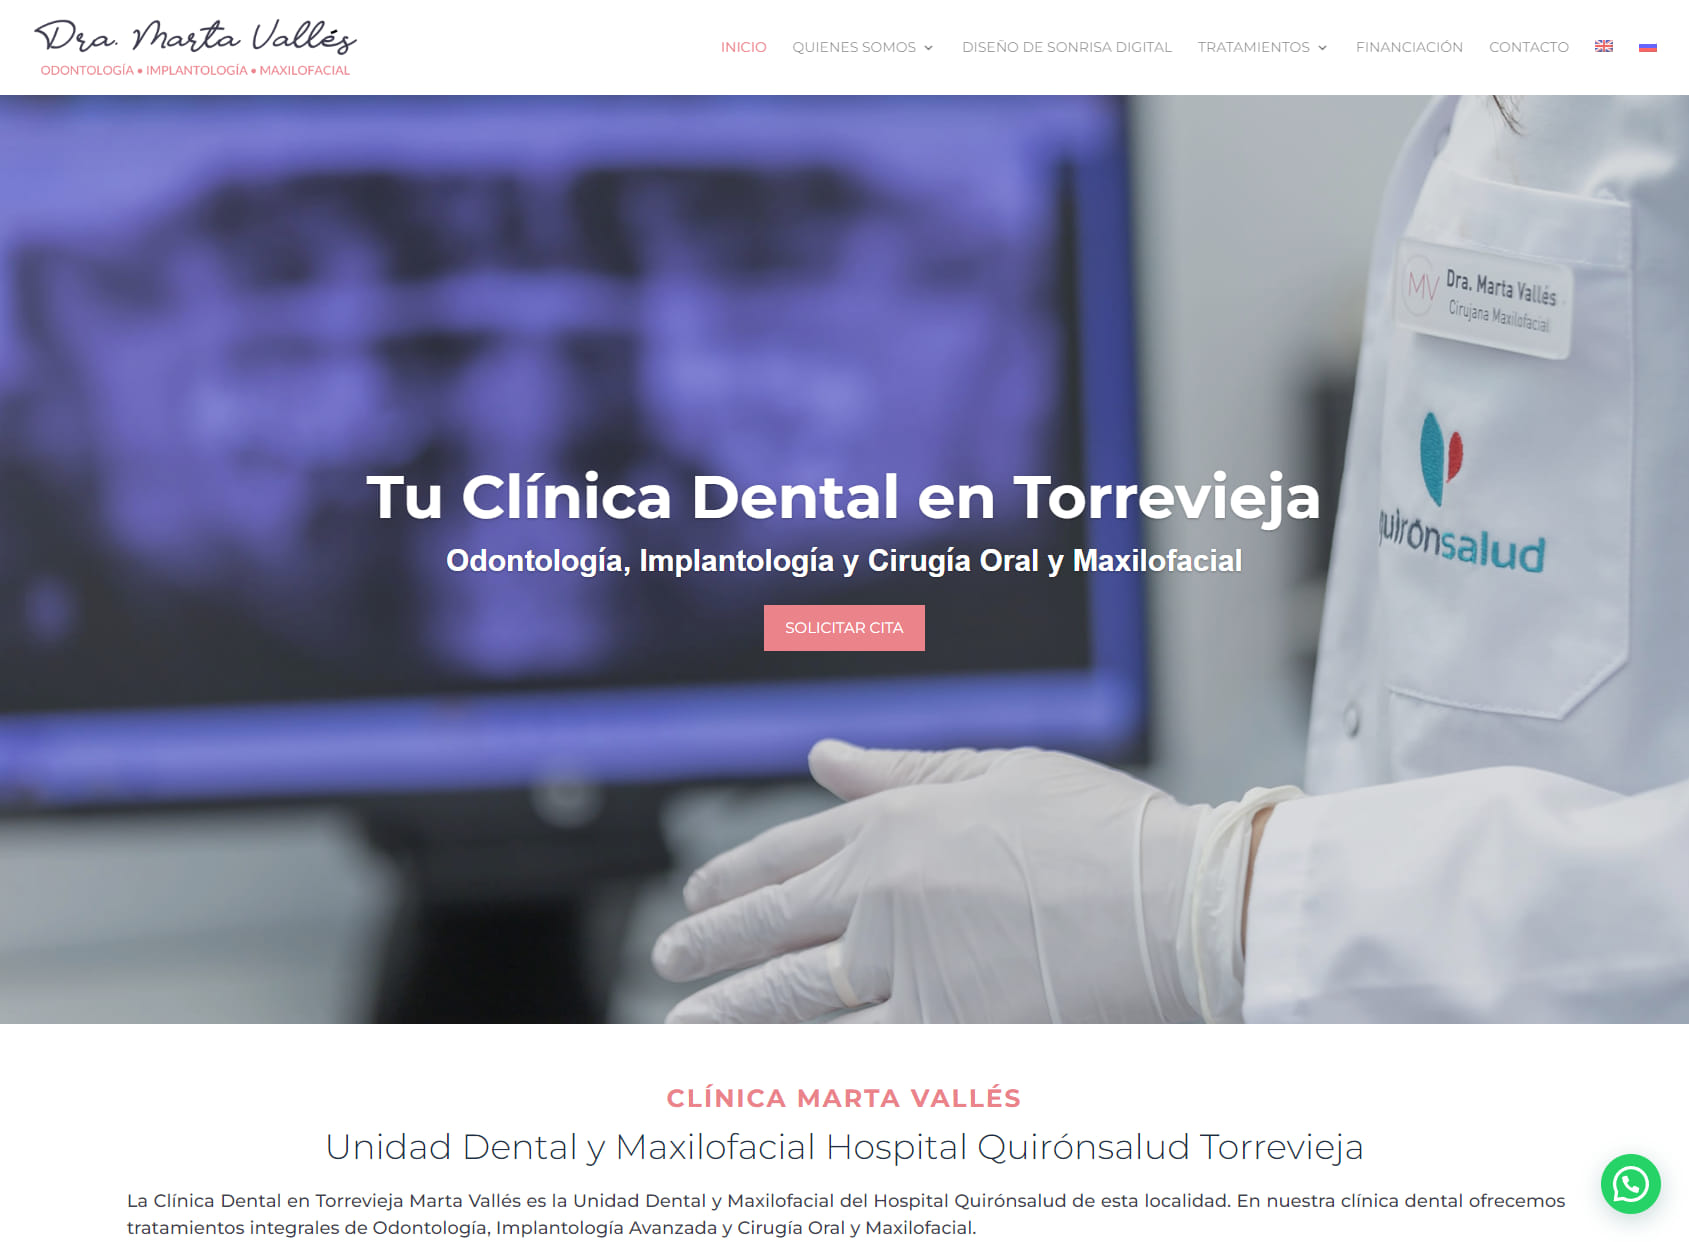 Unidad Dental y Maxilofacial - Clínica Marta Vallés